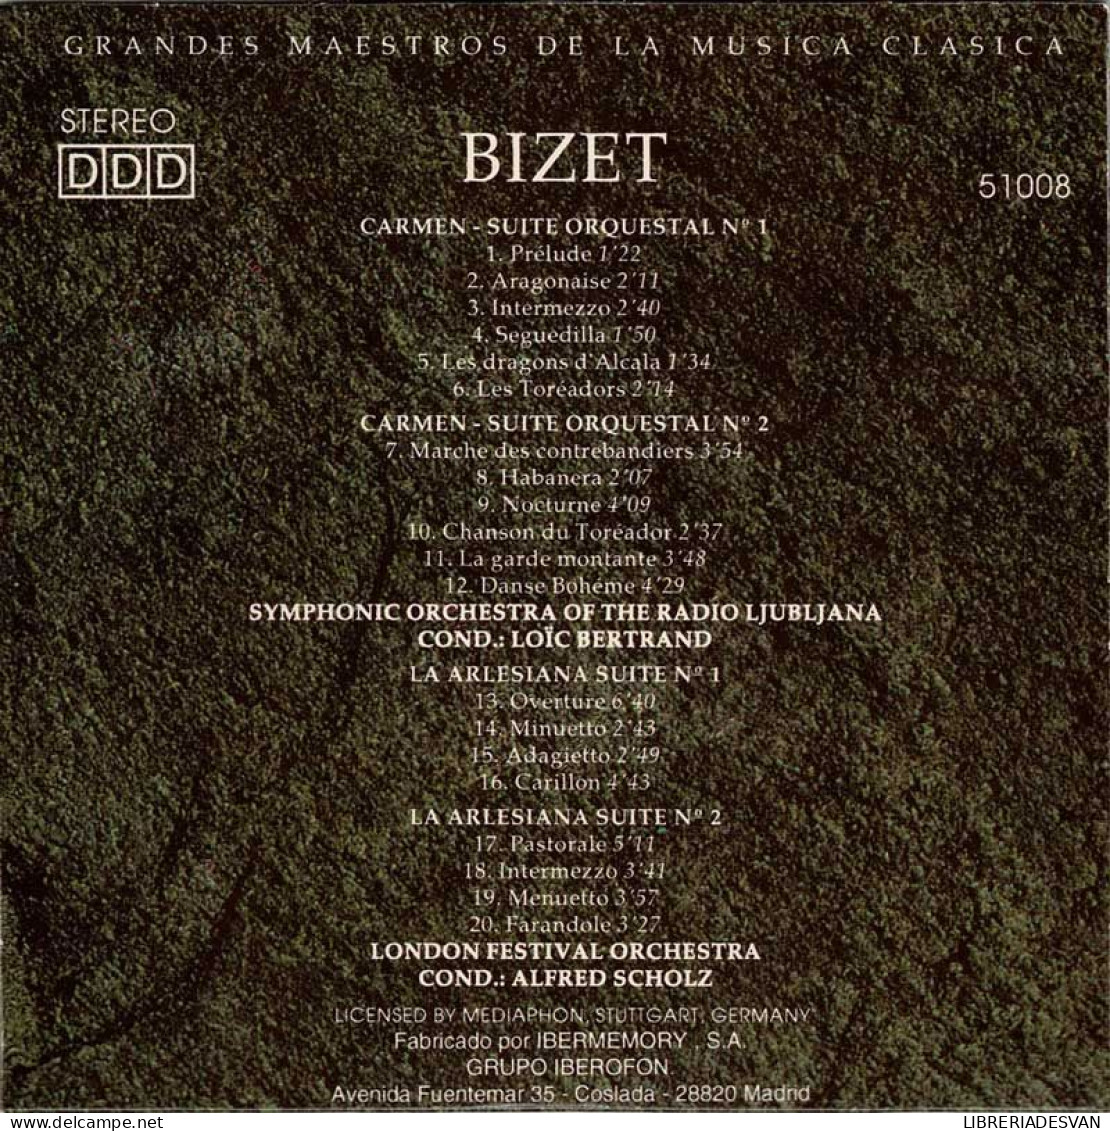 Bizet - Carmen. Suites Orquestales. La Arlesiana. CD - Clásica